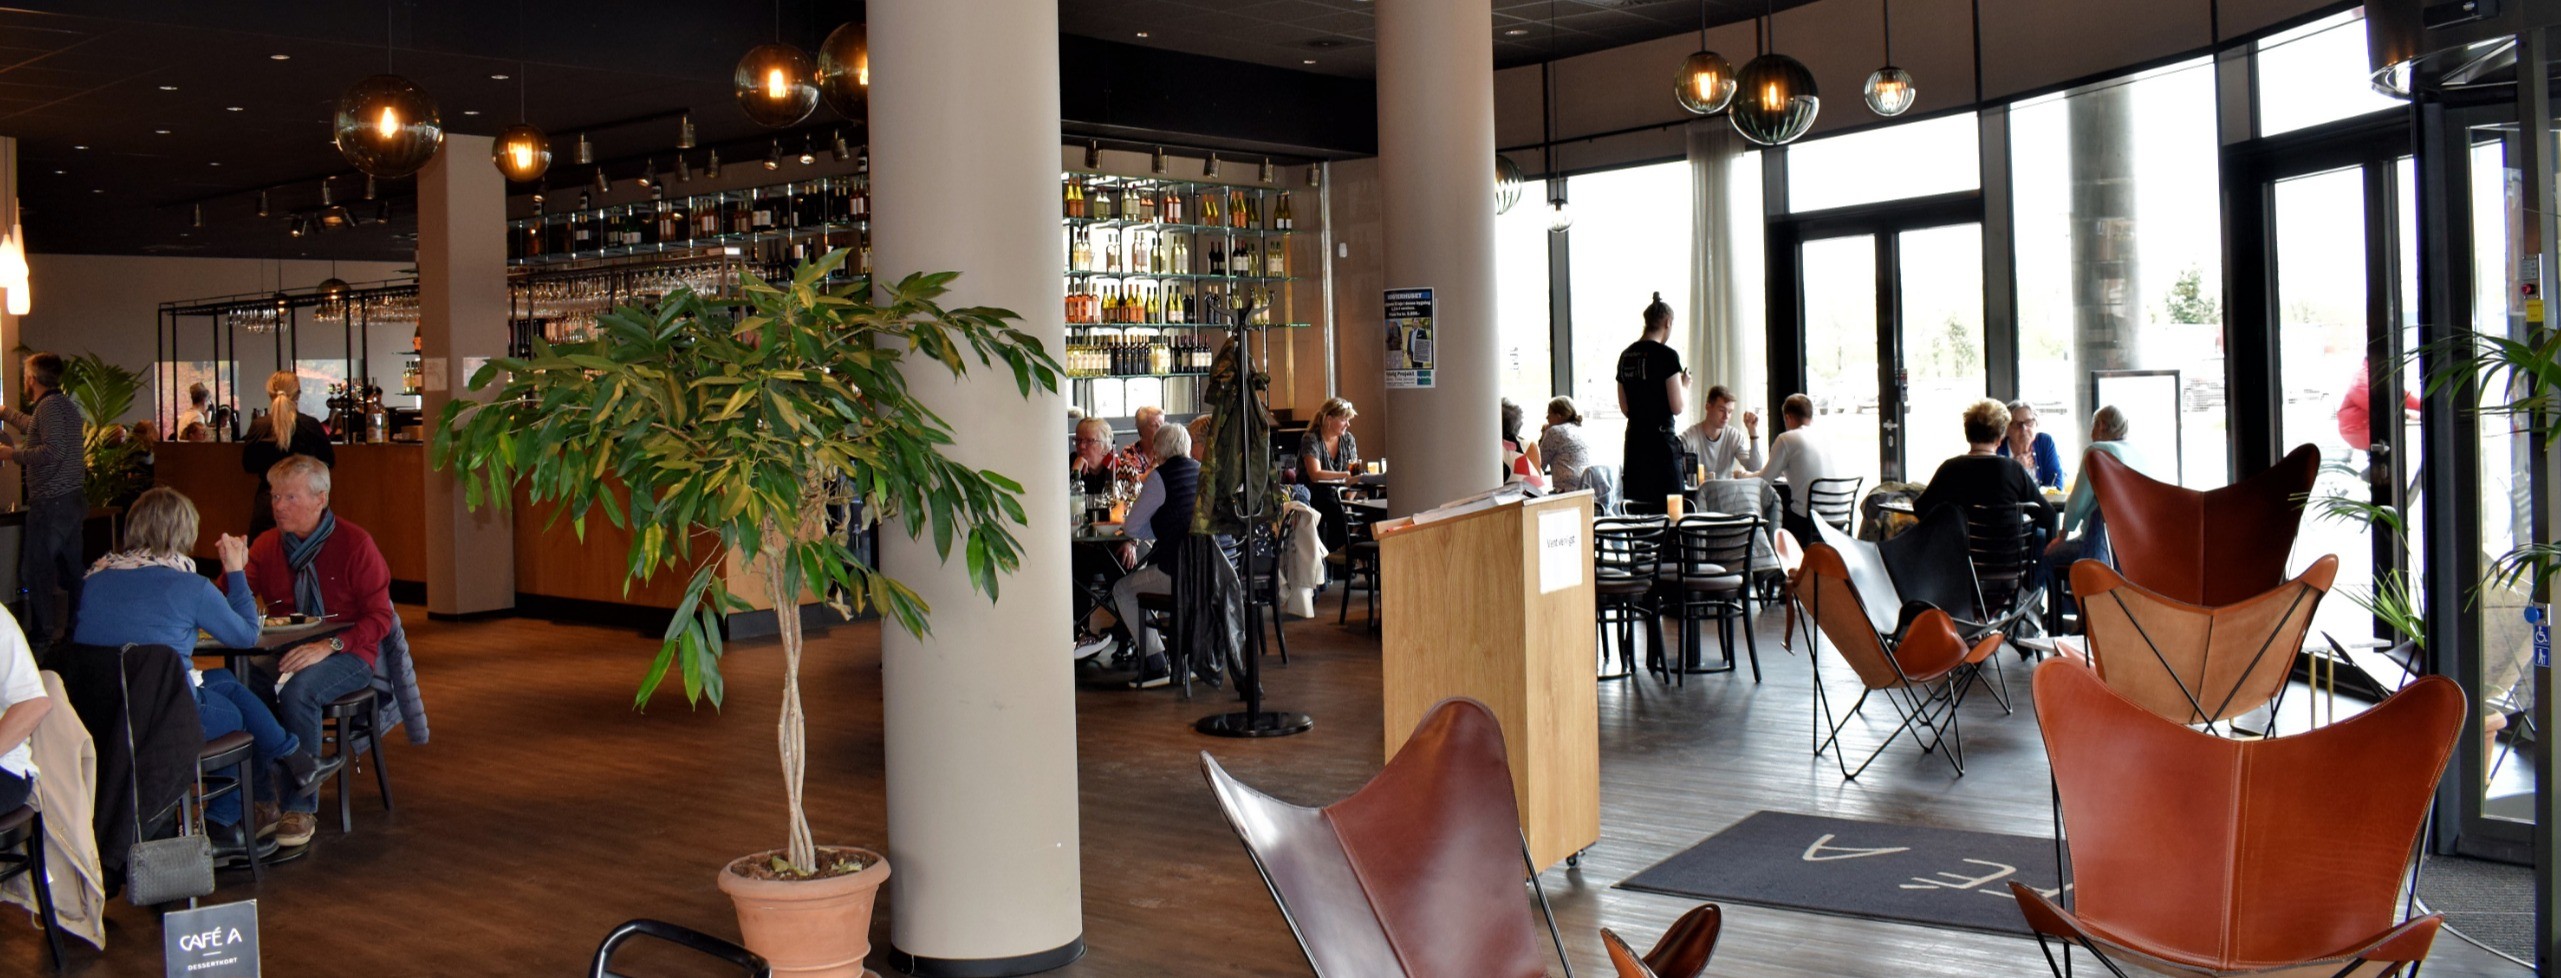 Restauranter under radaren på Fyn: hvorfor hører vi ikke om dem som gør os mætte?_6